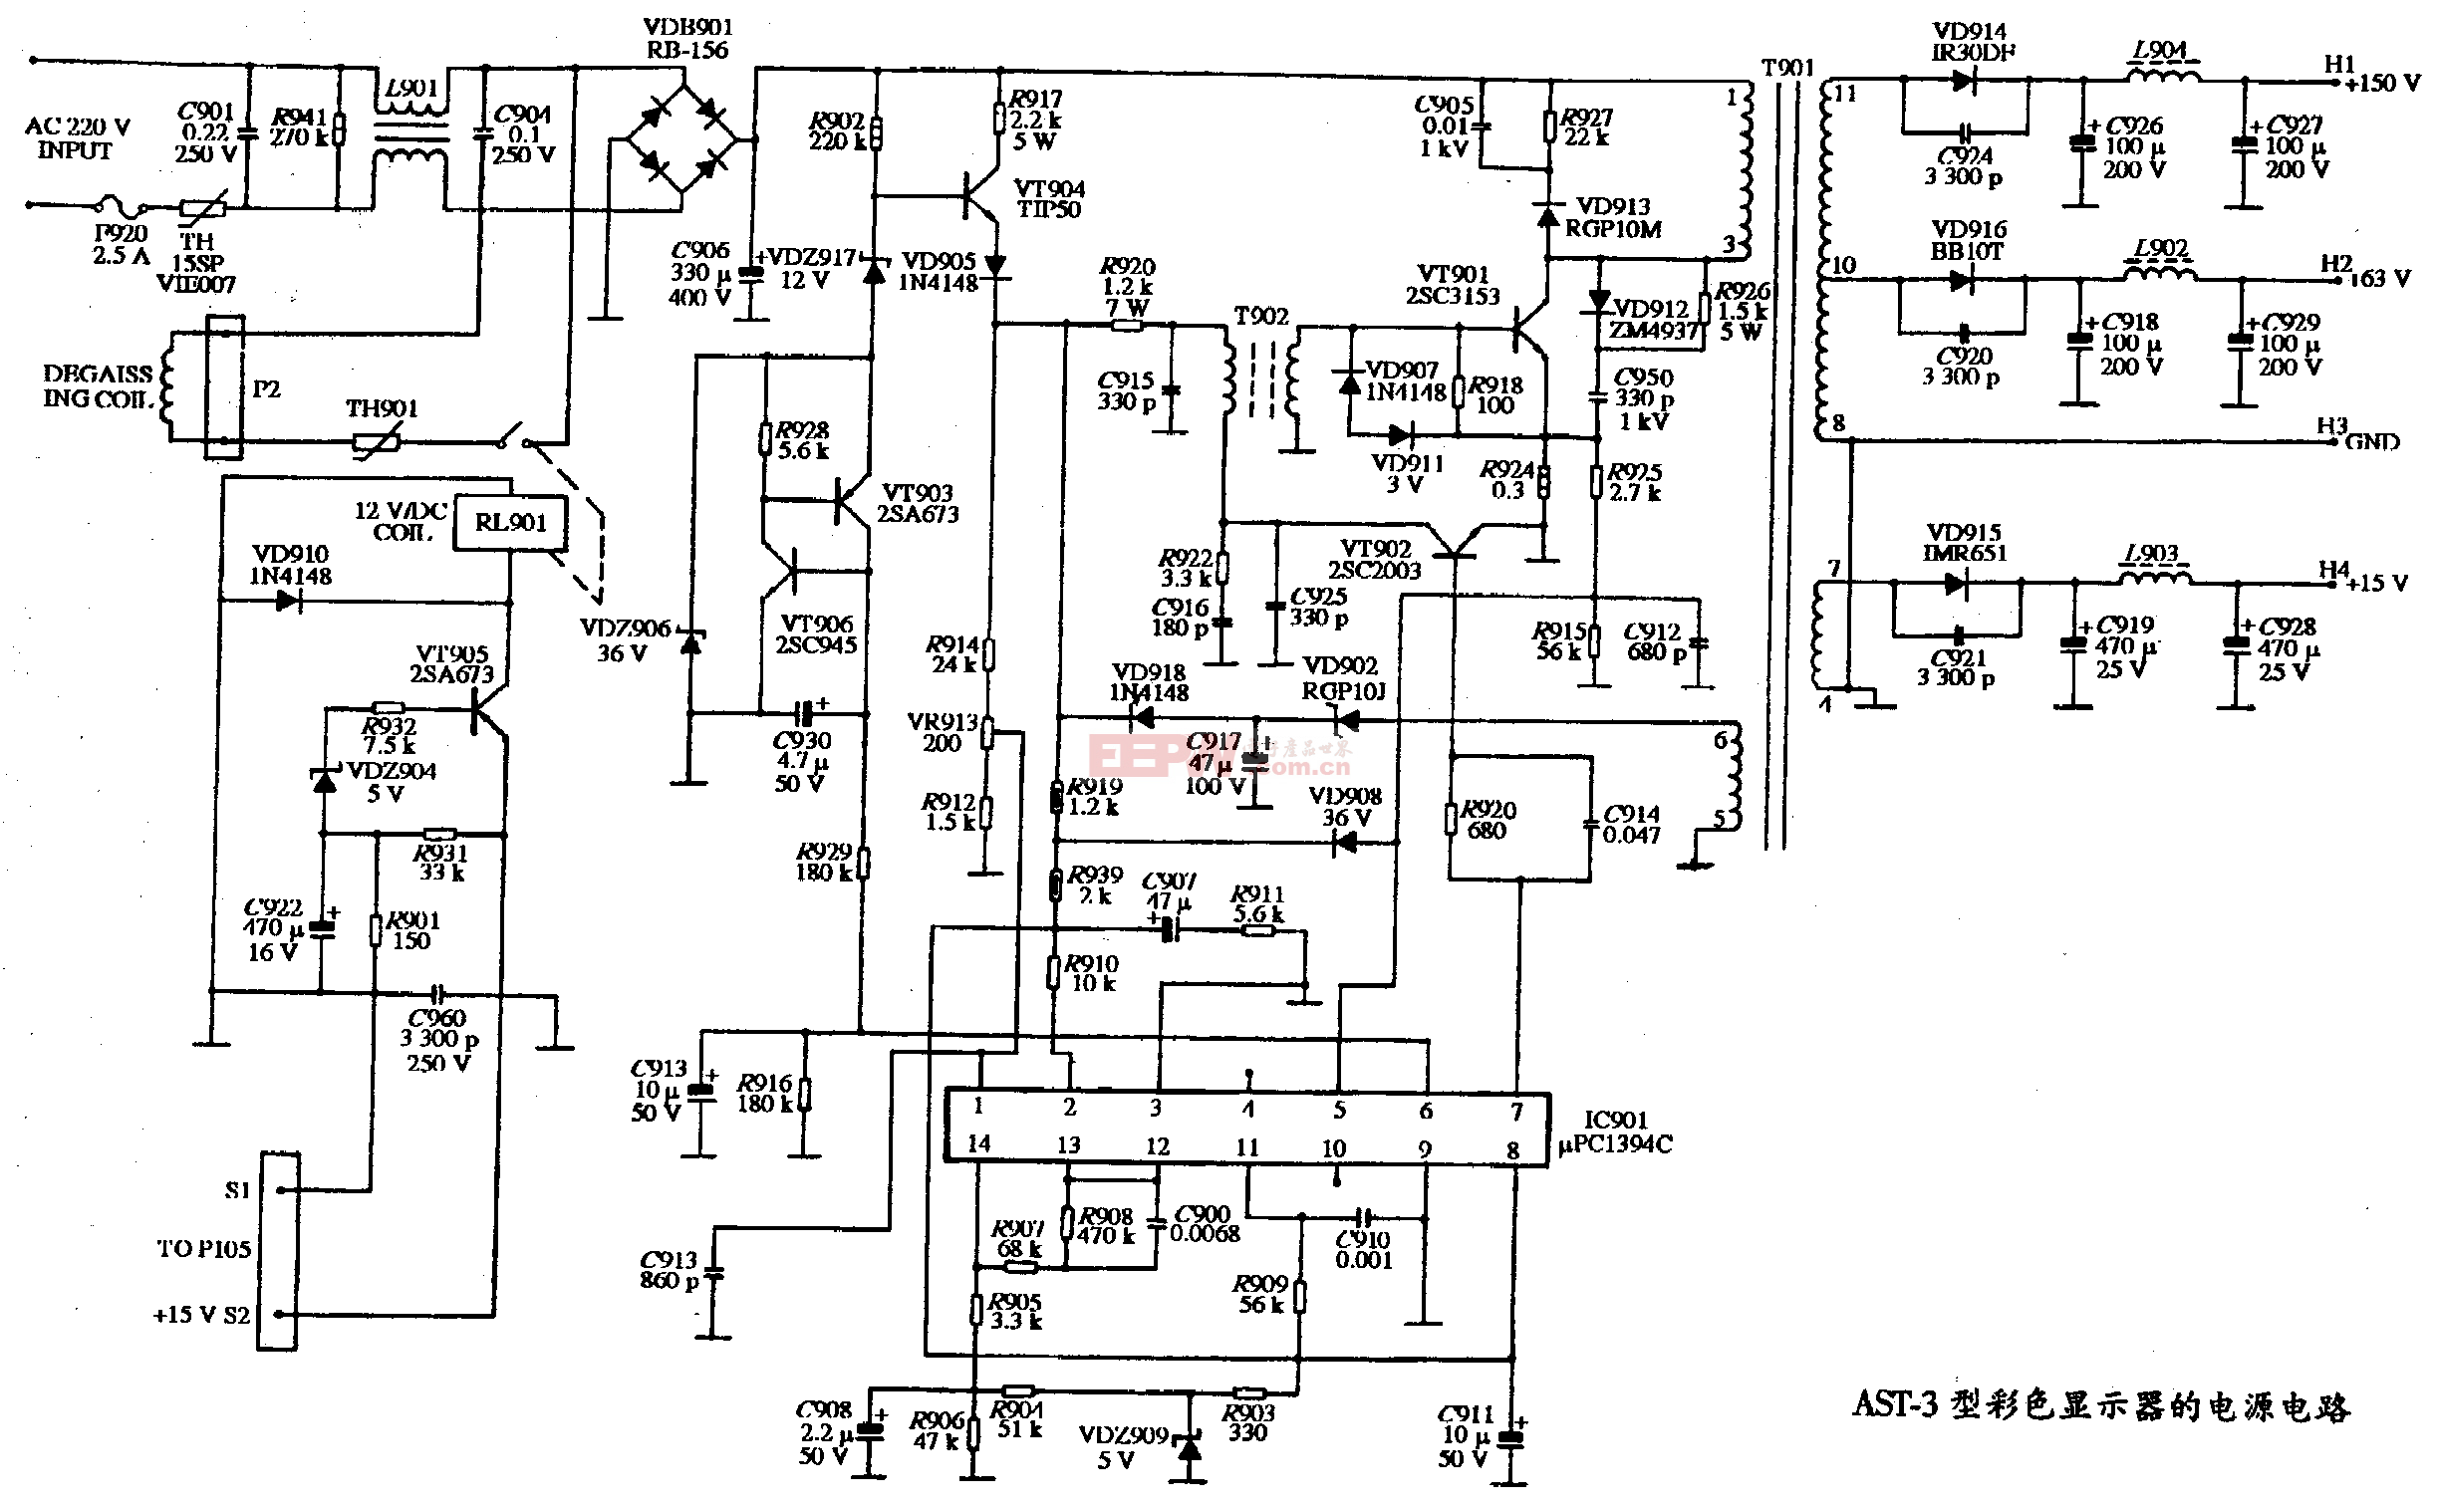 8、AST-4型彩色显示器的电源电路图